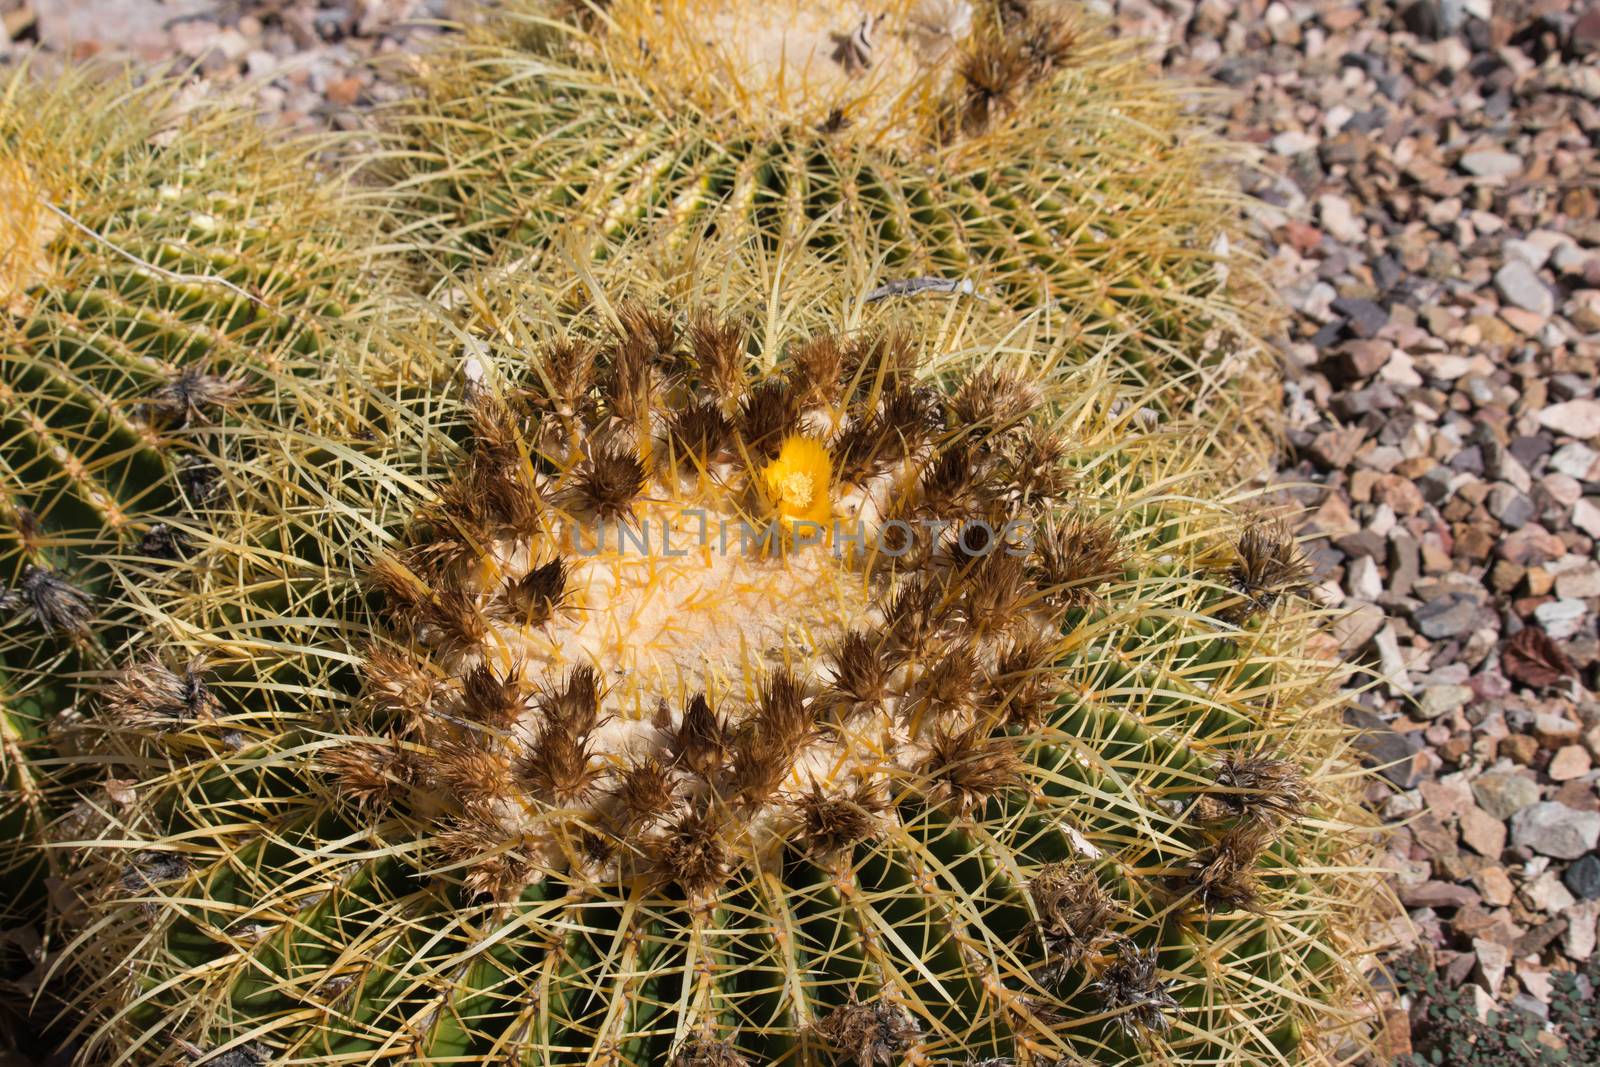 Golden Barrel Cactus in desert.